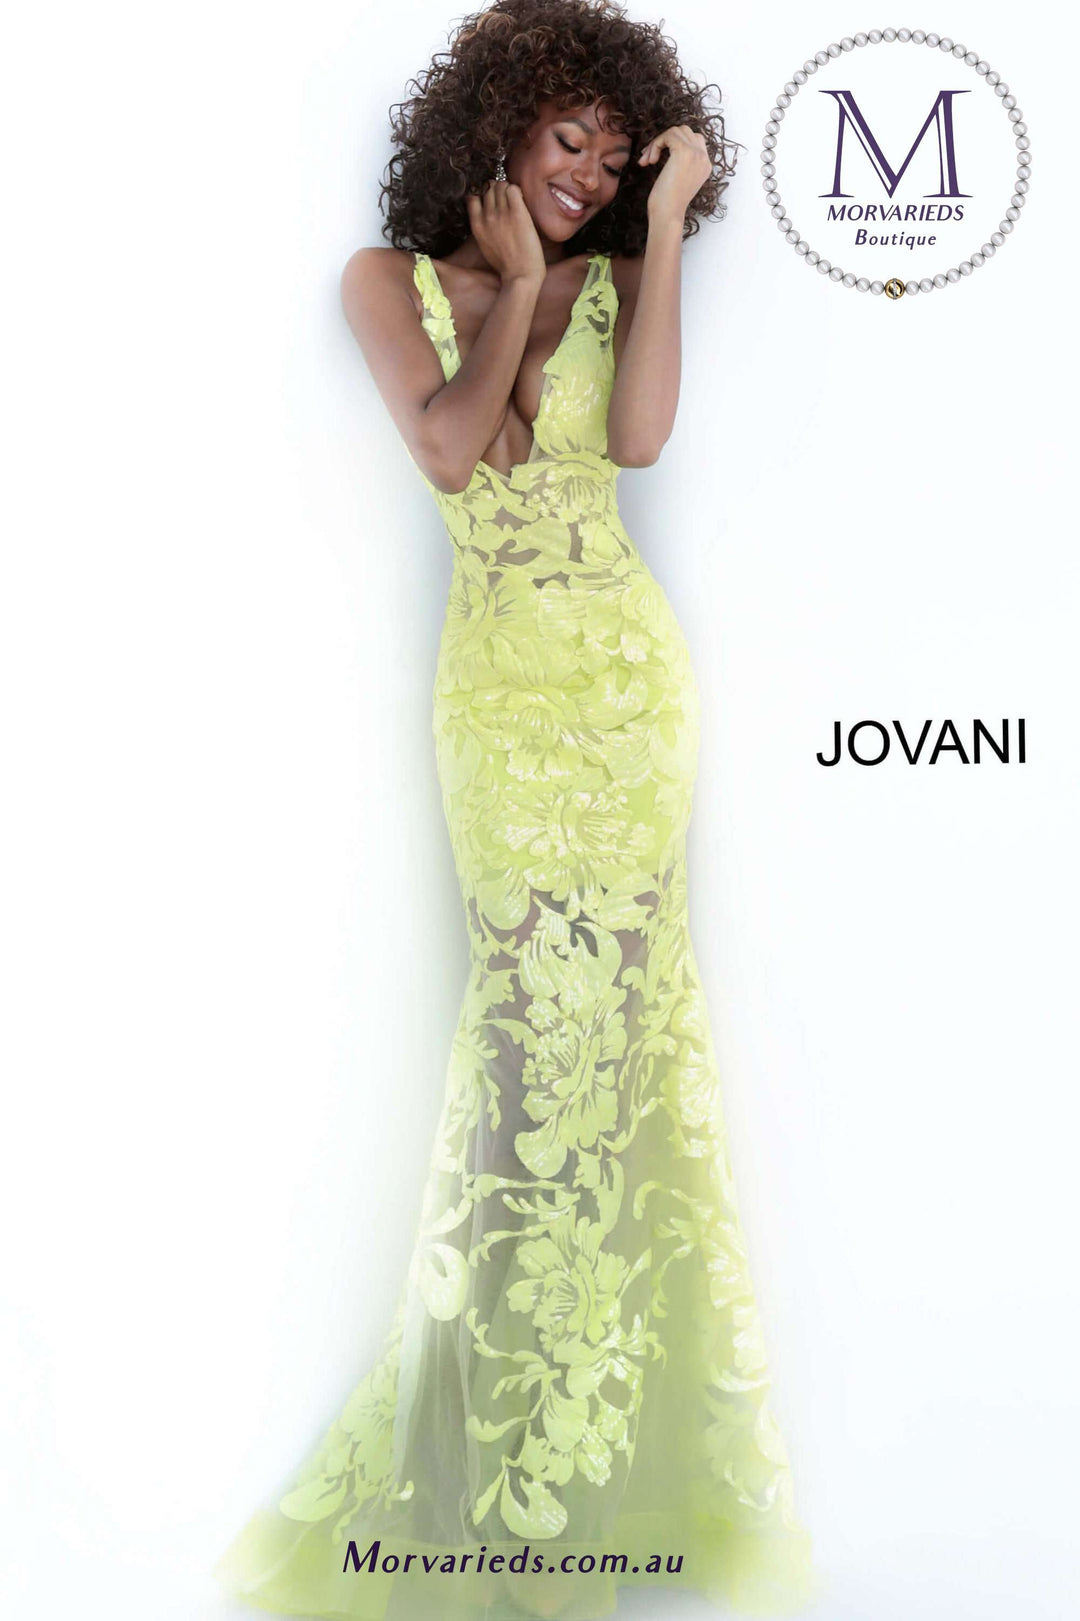 Embellished Sequin Formal Prom Dress Jovani 60283 - Morvarieds Fashion